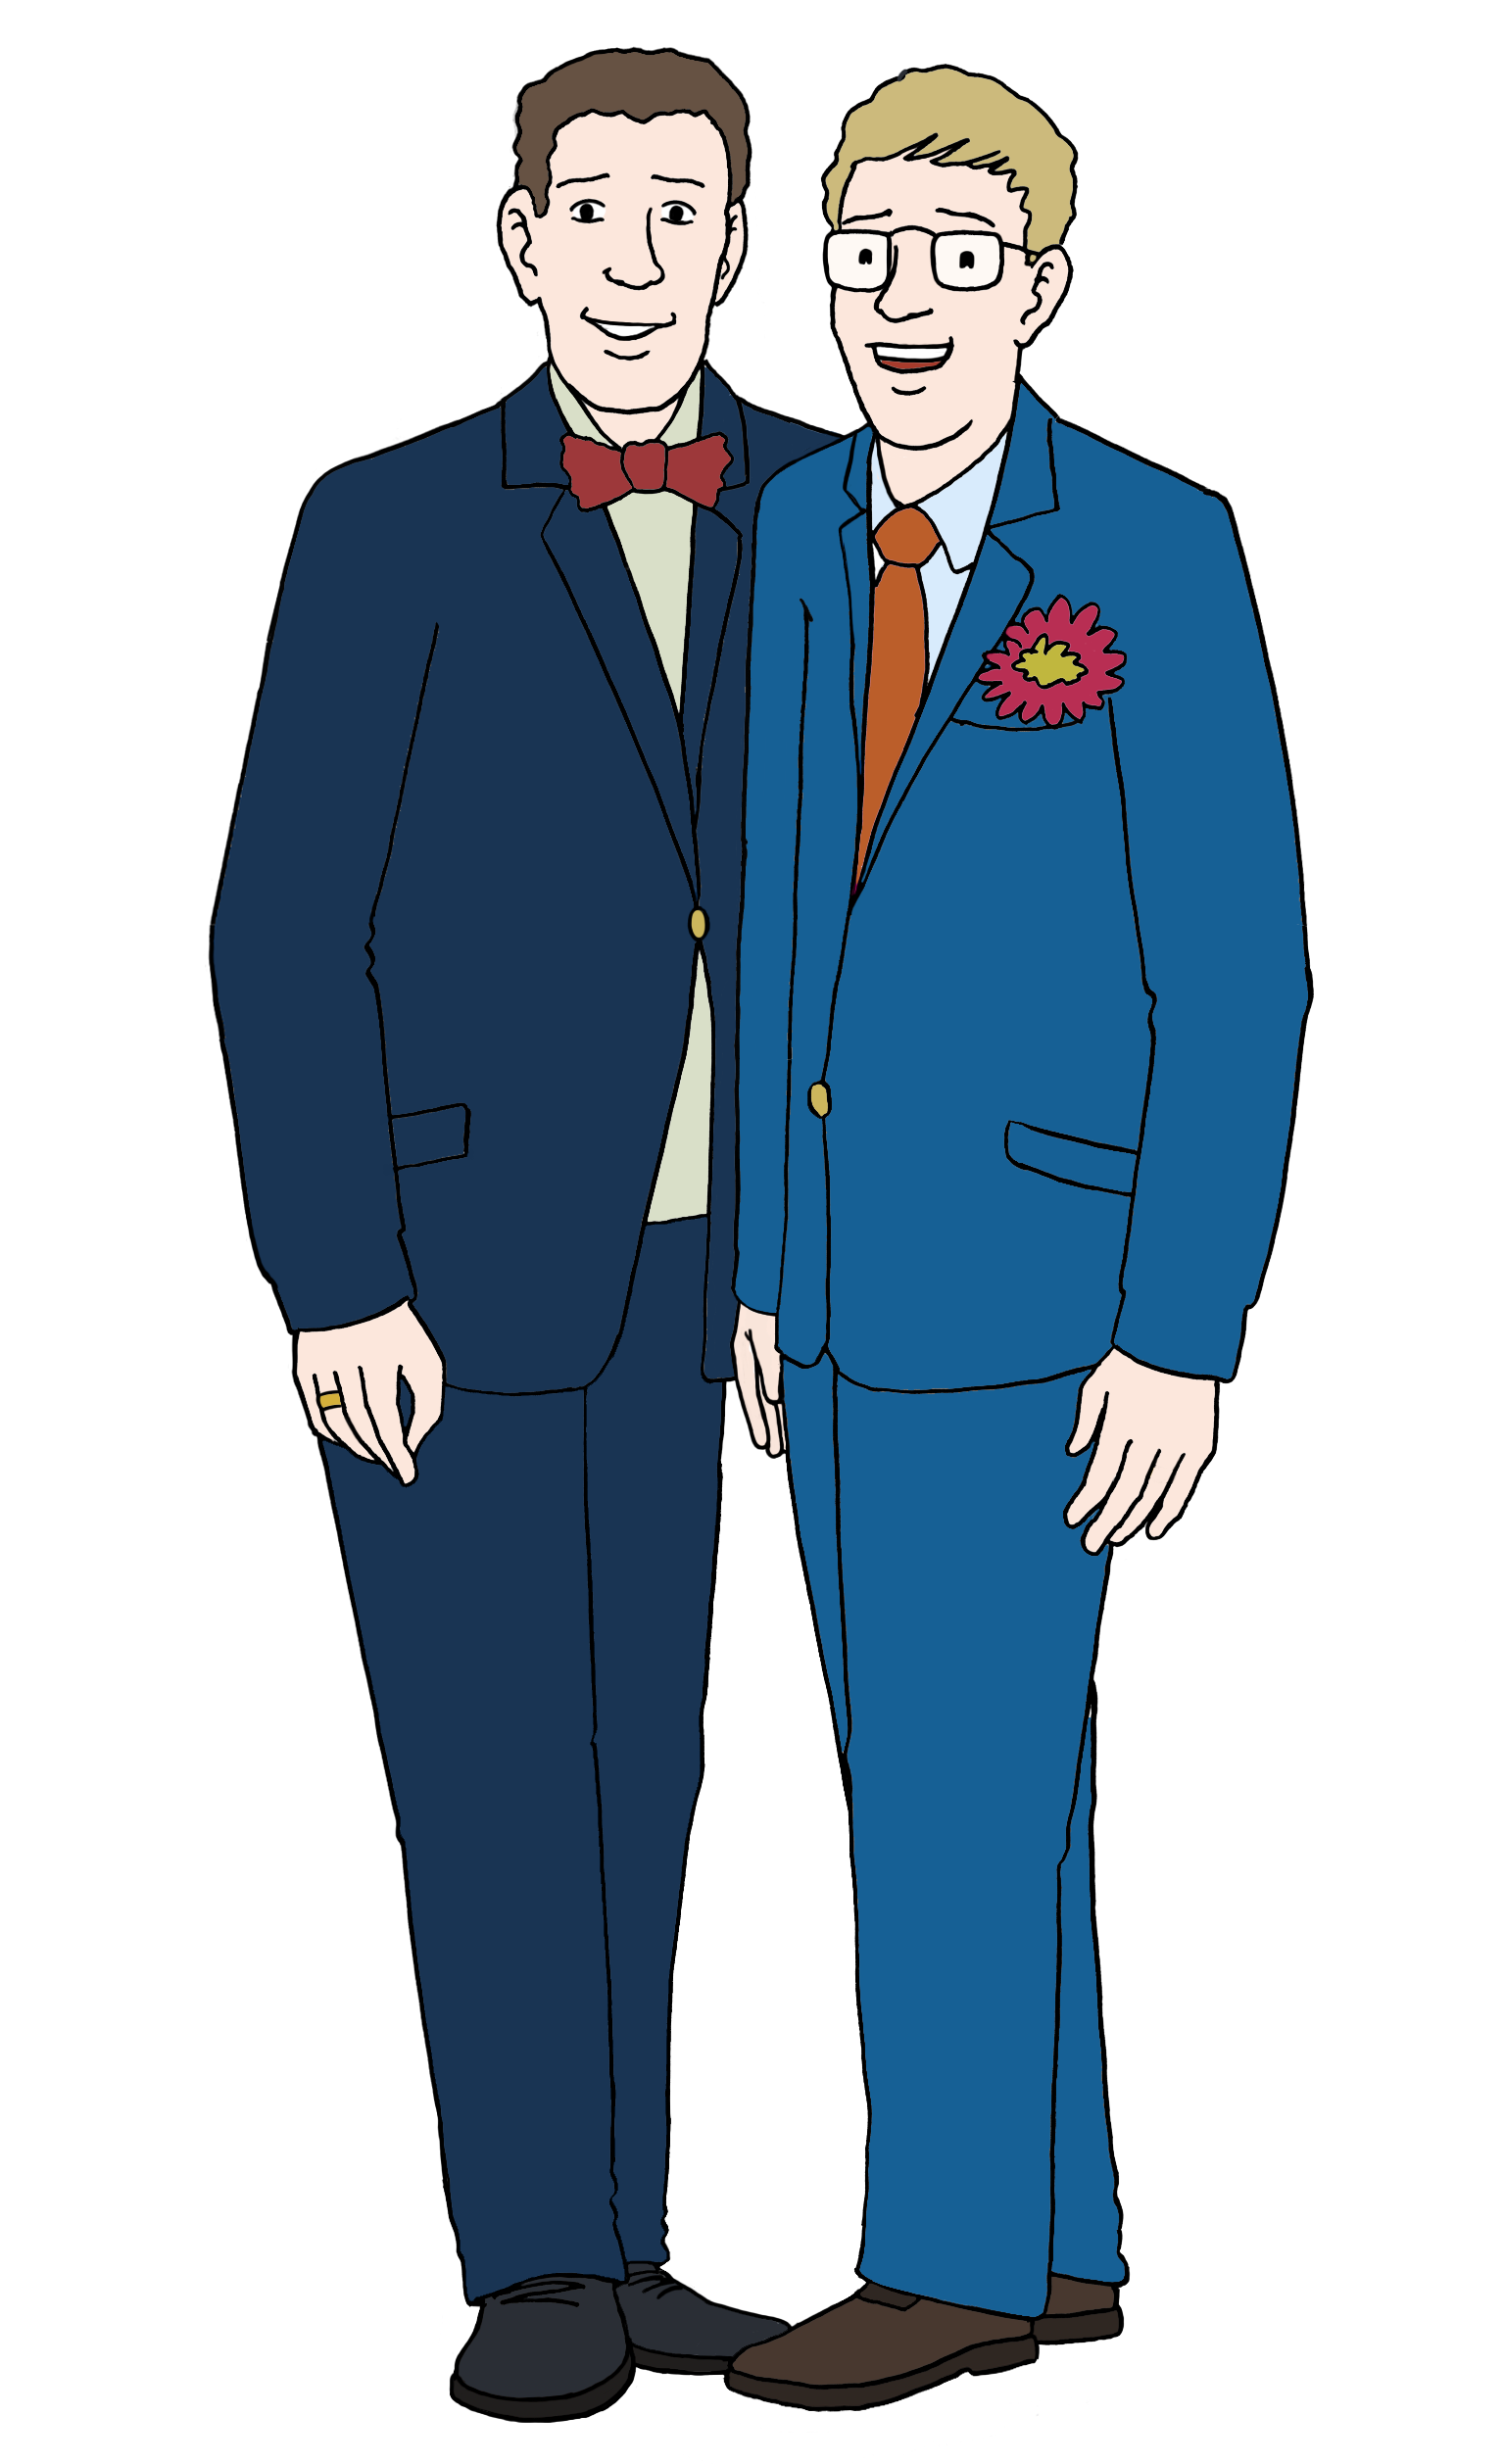 Leichte Sprache Bild: zwei Männer in Hochzeitskleidung